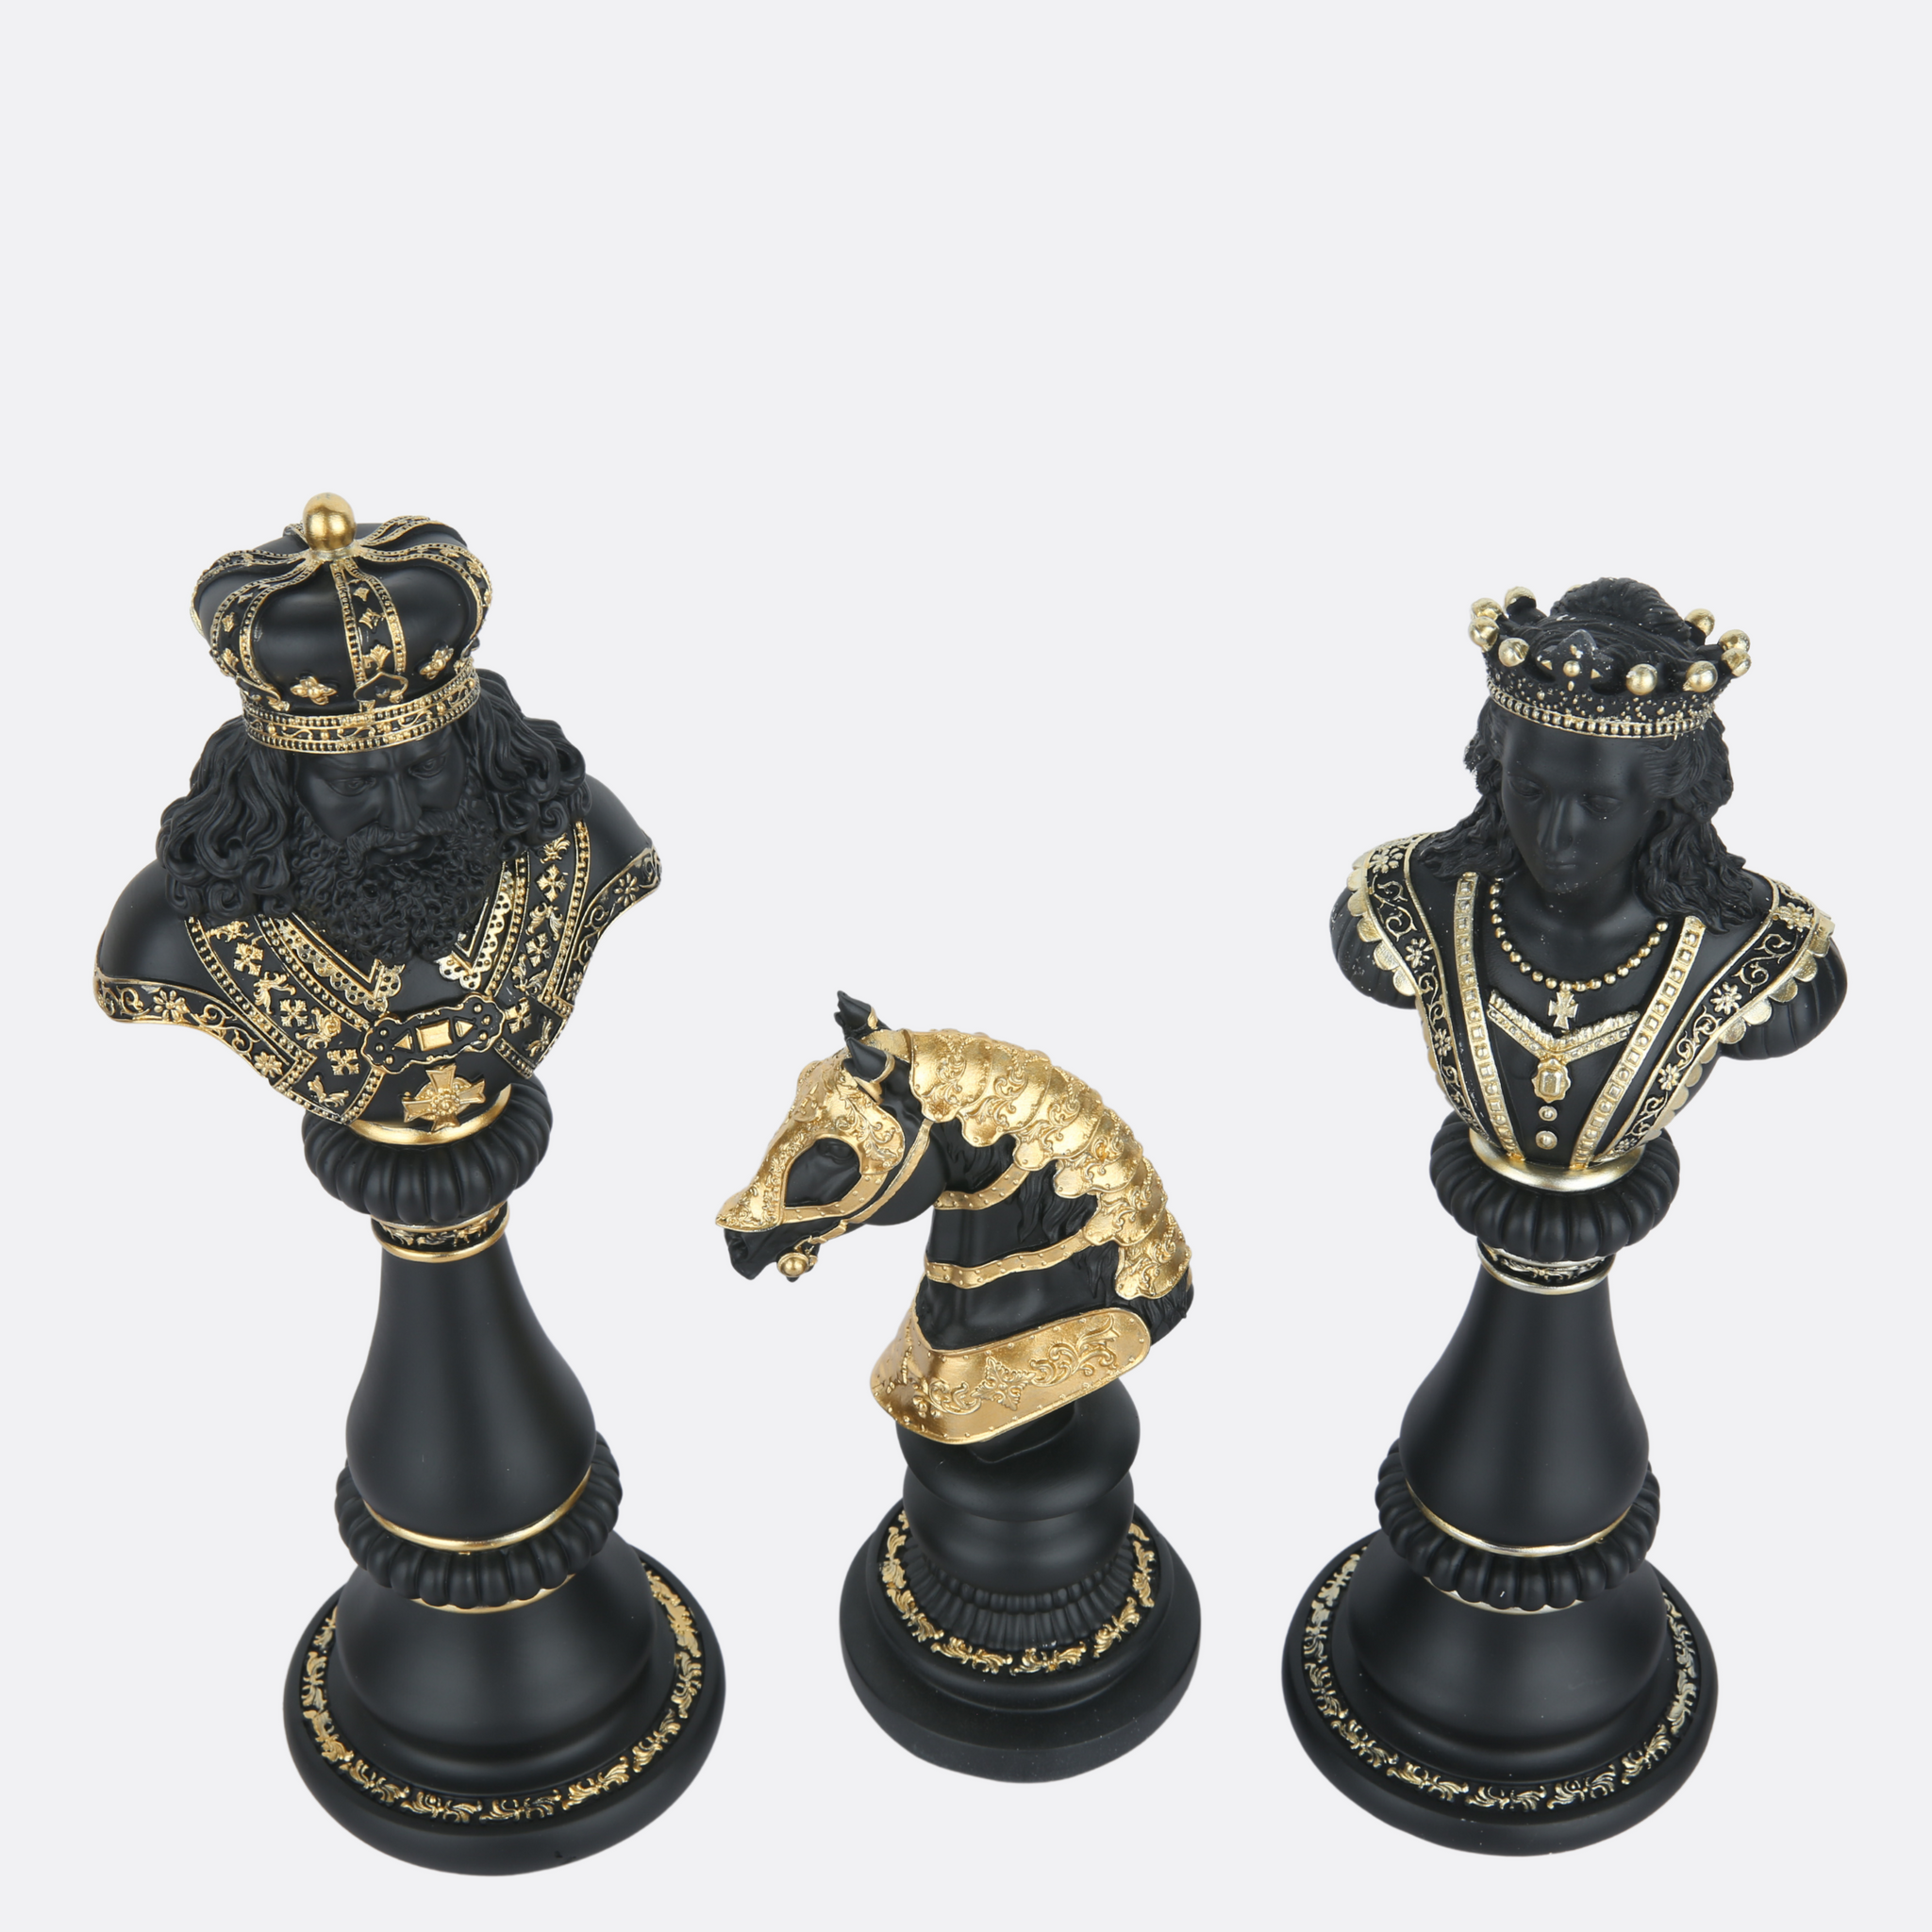 Modern Chess Sculptures (Set of 3)